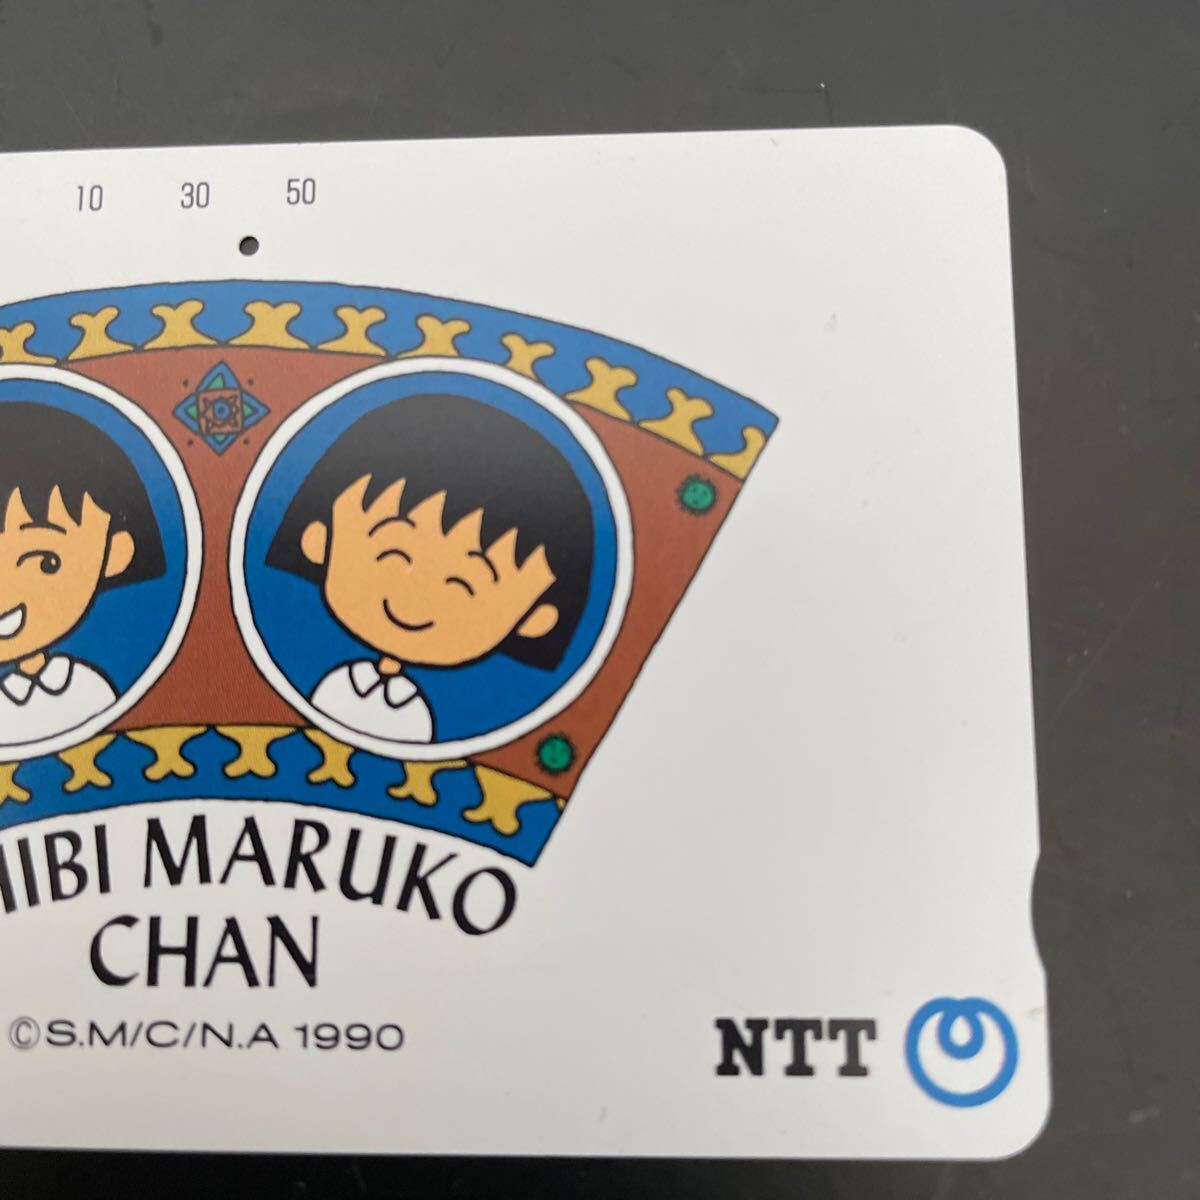  телефонная карточка Chibi Maruko-chan * телефонная карточка Chibi Maruko-chan 50 частотность (46 частотность остаток. )(1990 год 12 месяц 1 день выпуск ) *( б/у товар )